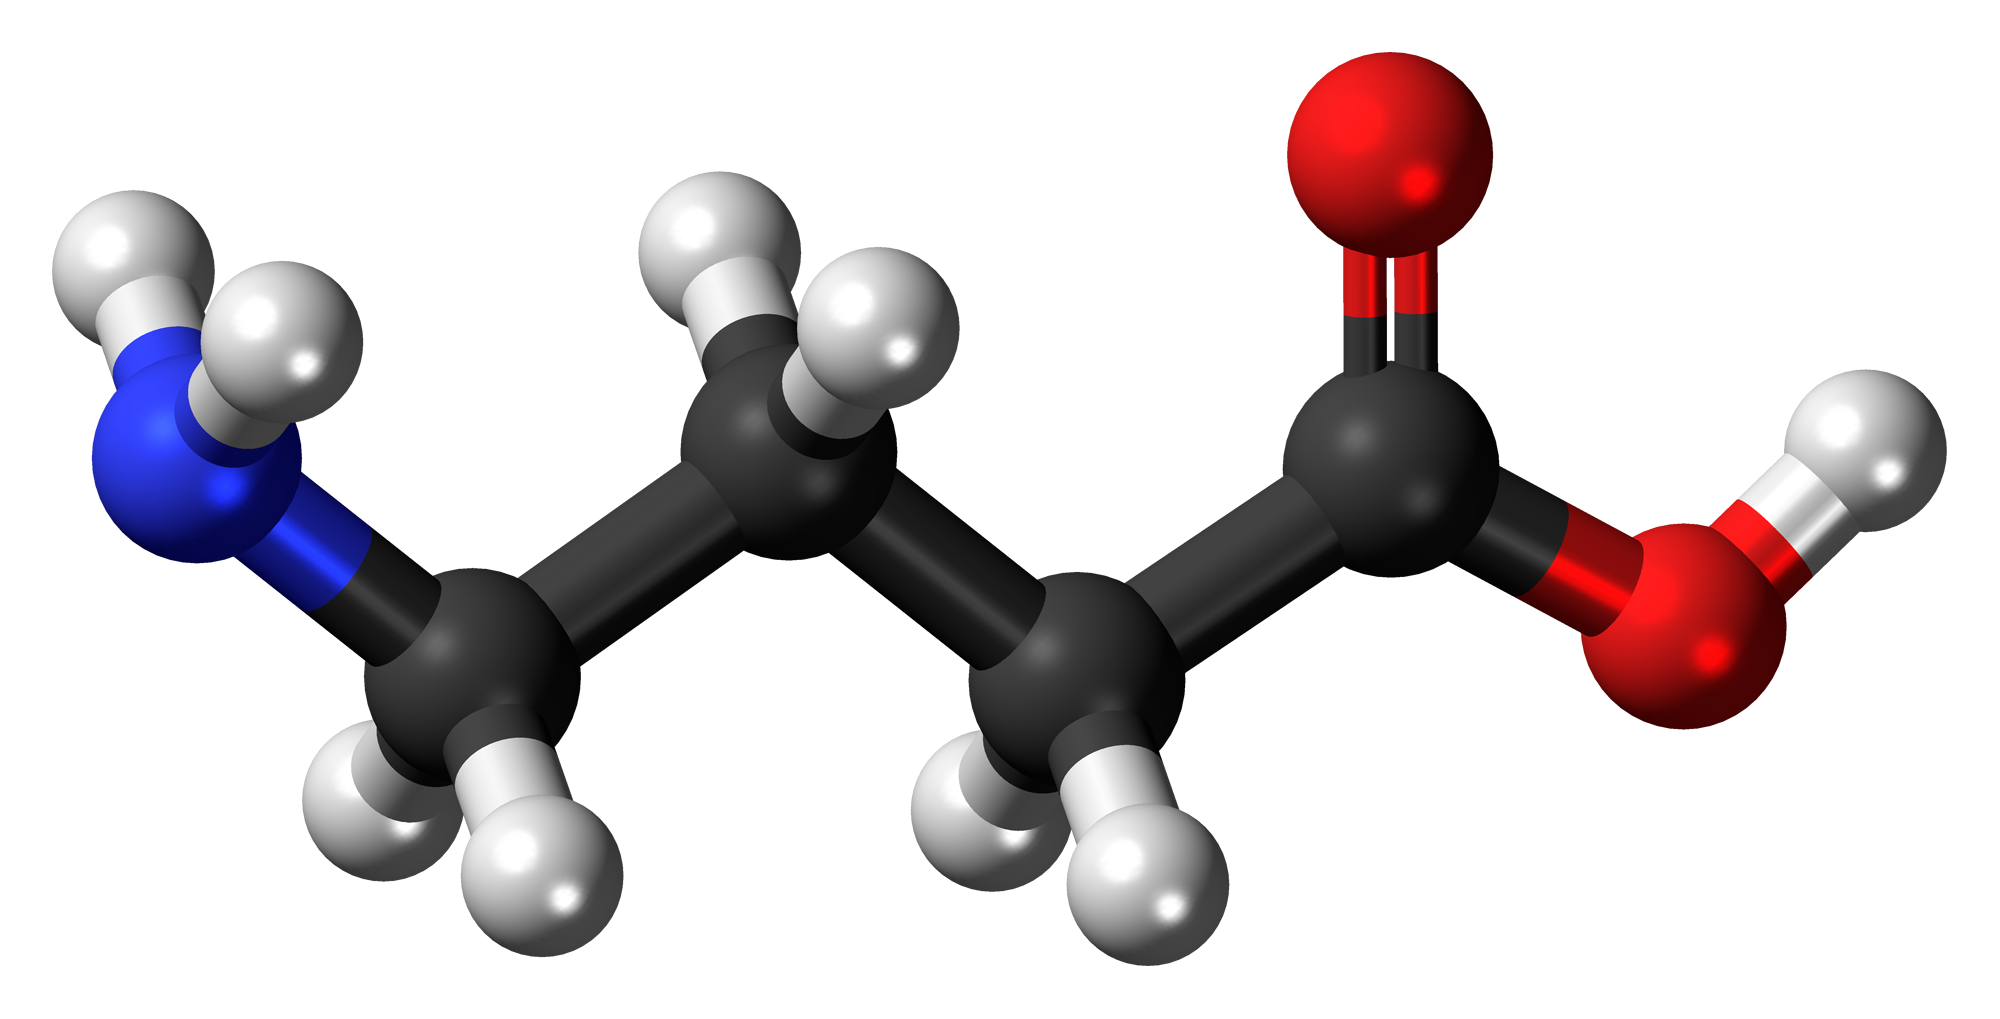 Genellikle GABA kısaltmasıyla bilinen γ-aminobütirik asit veya gama-aminobütirik asit, γ-aminobütirik asidin en yaygın şeklidir.